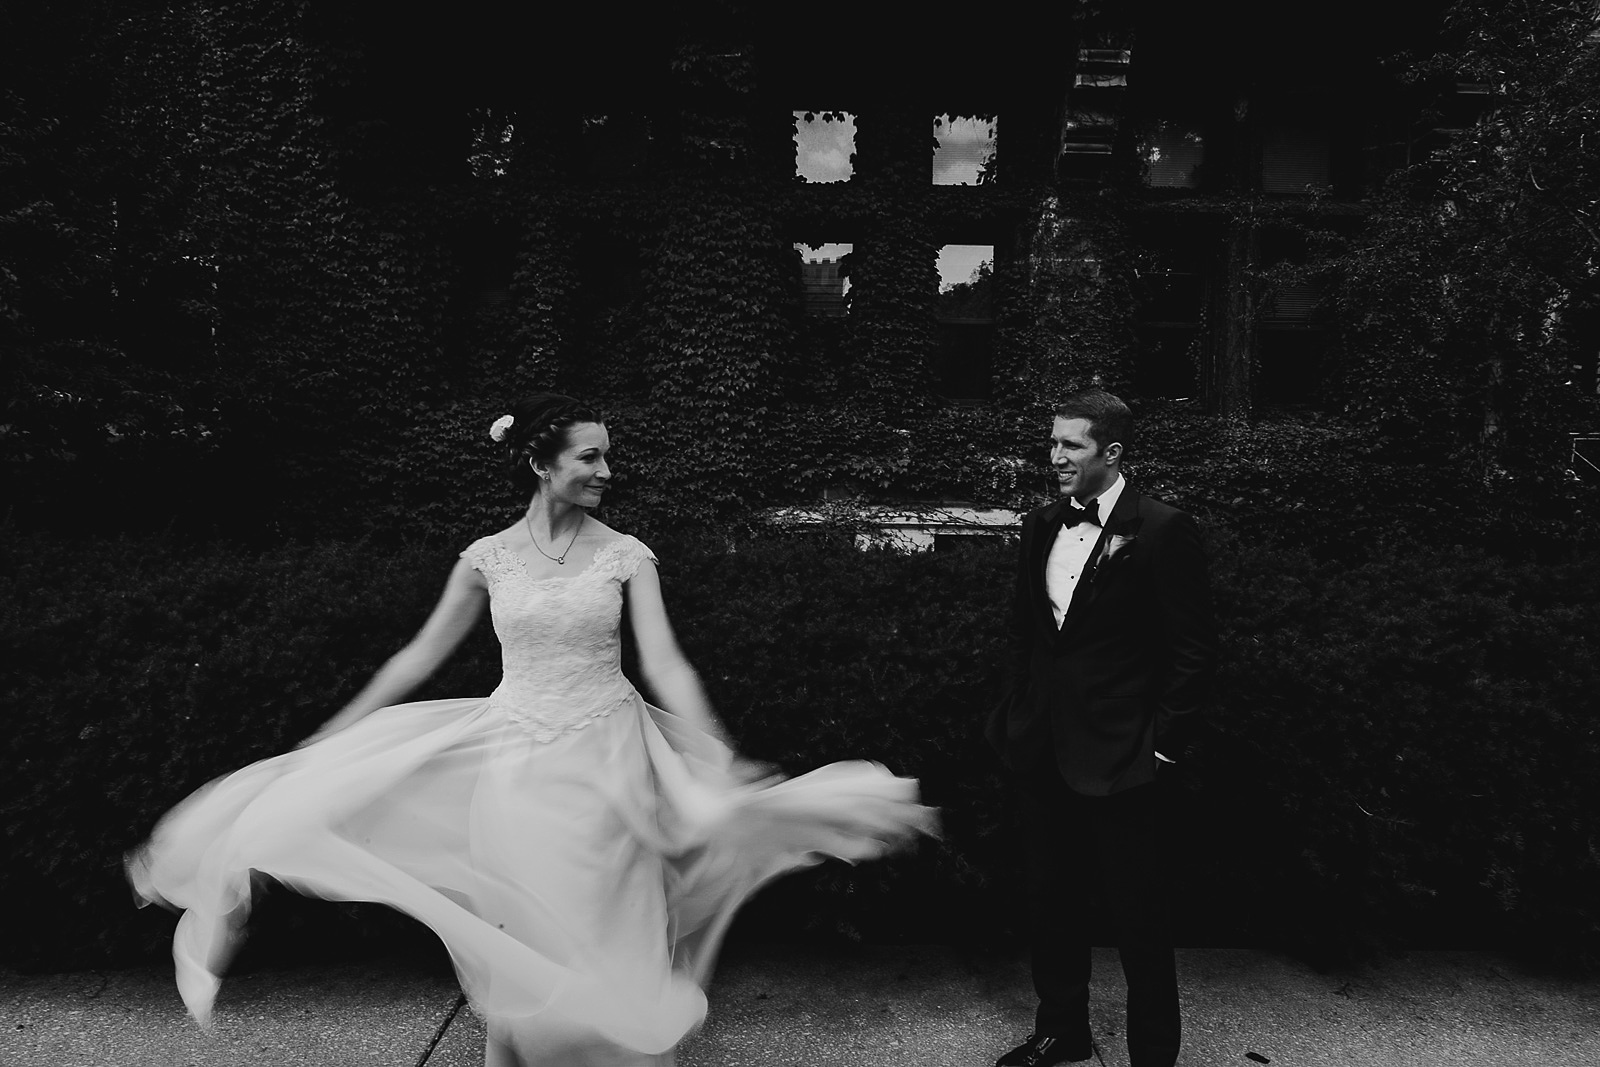 22 university of chicago wedding photographers - University of Chicago Wedding Photos // Annemarie + Zach